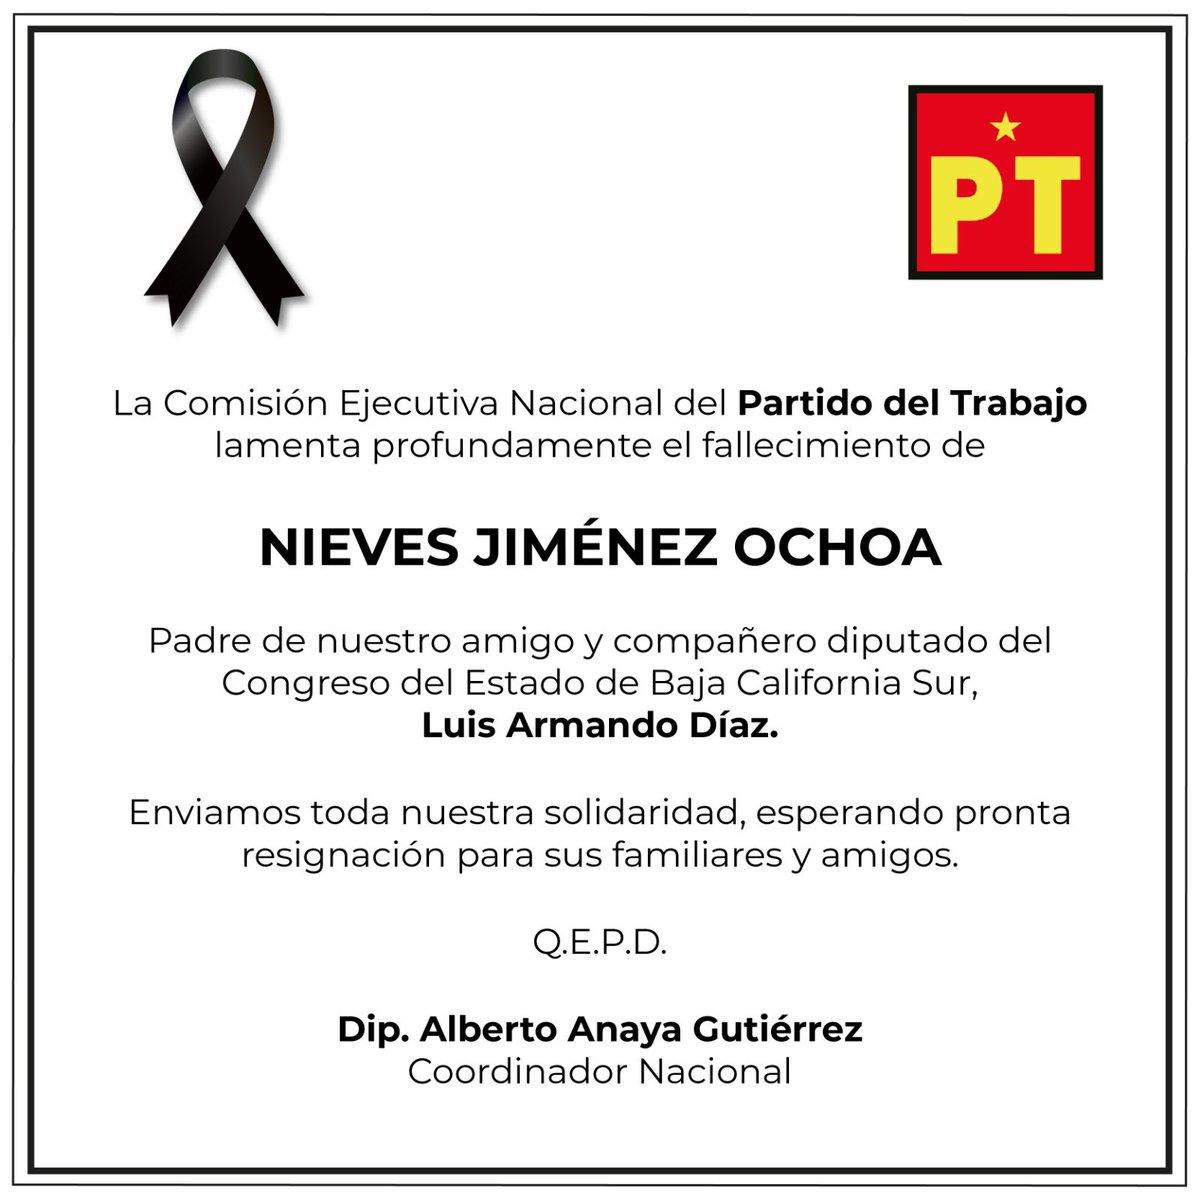 Envío mi más sentido pésame a la familia de nuestro amigo Luis Armando Díaz, por la lamentable pérdida de su padre, Nieves Jiménez Ochoa. Pronta resignación a su familiares y amigos.